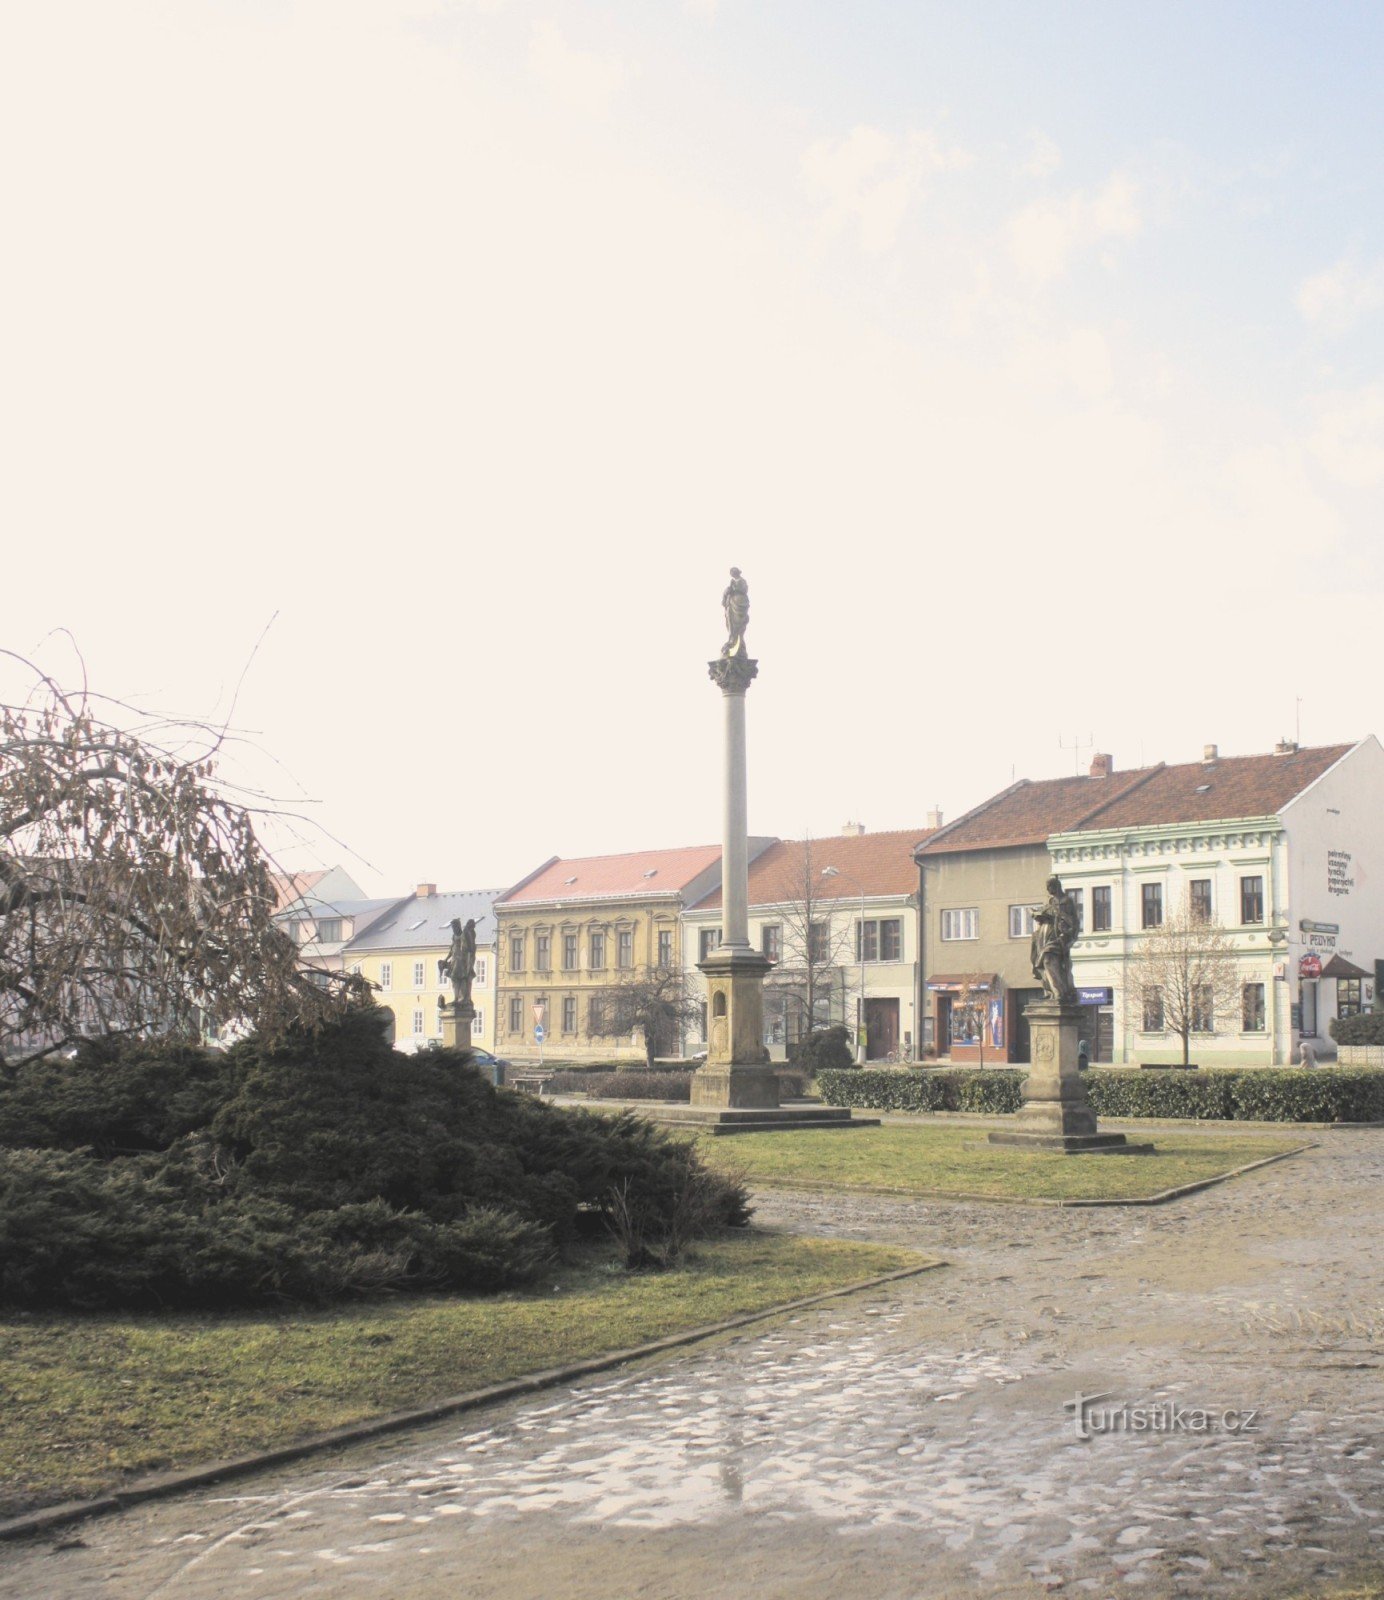 Μαριανή στήλη στην πλατεία στο Kojetín